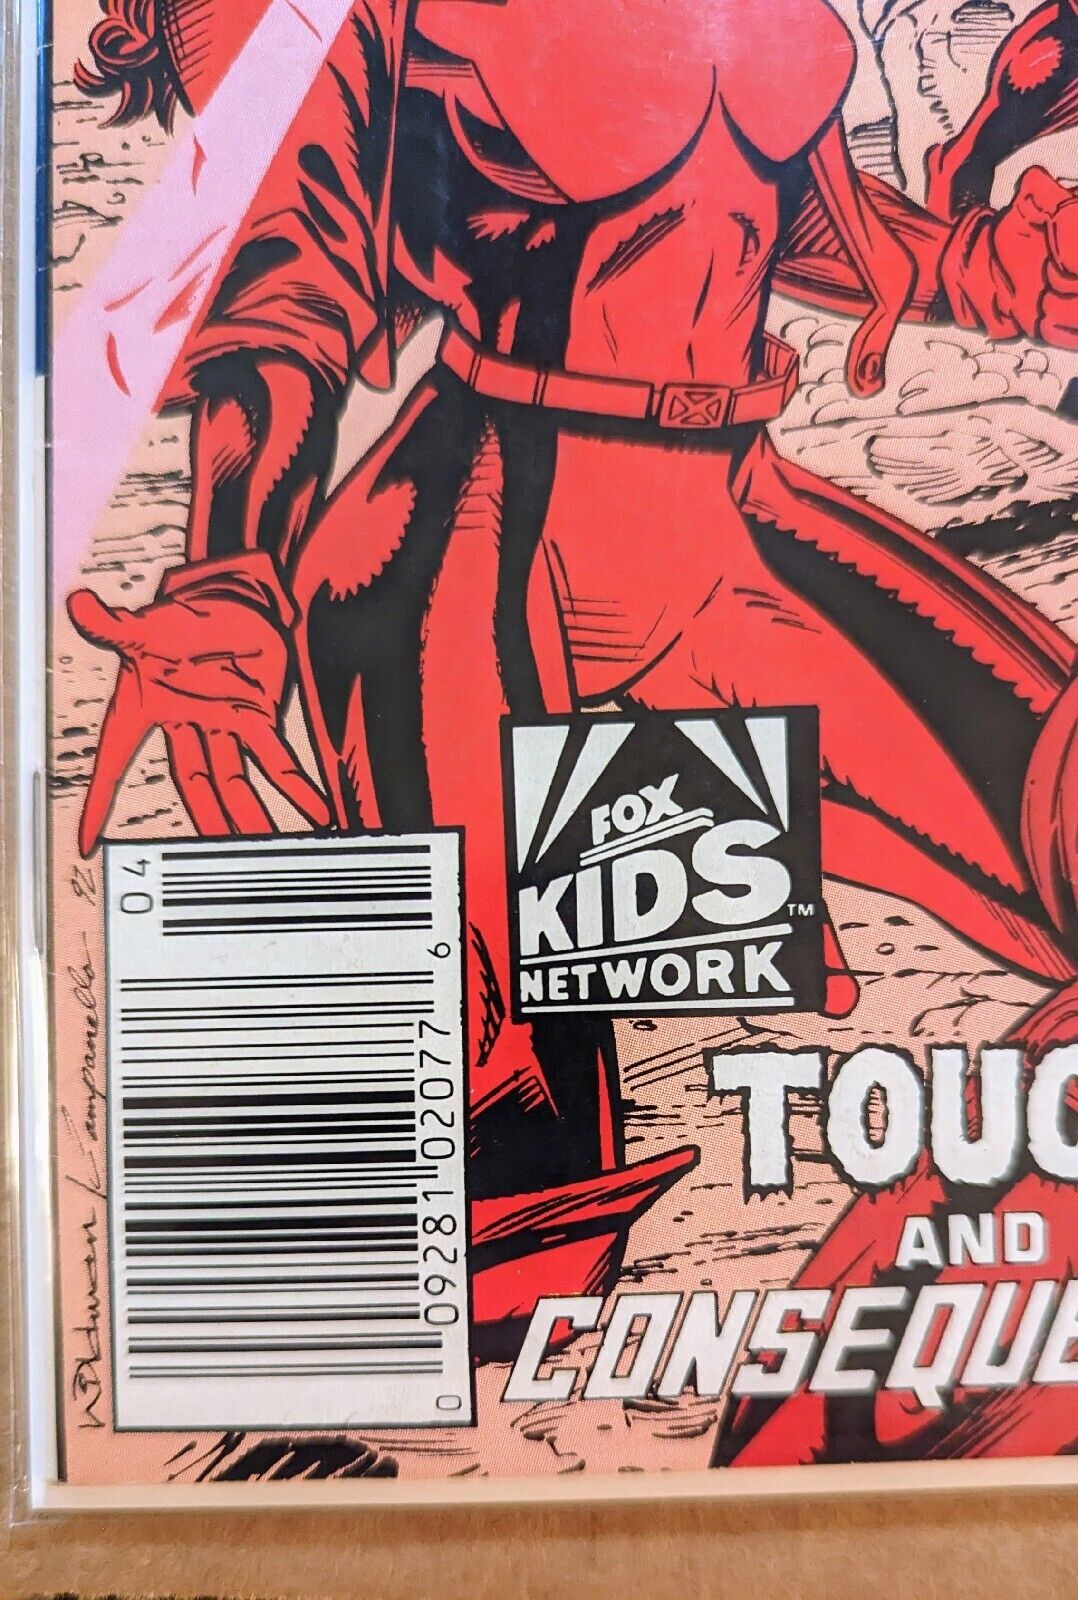 X-Men Adventures (1992 series) #4 in NM minus condition. Marvel Comics